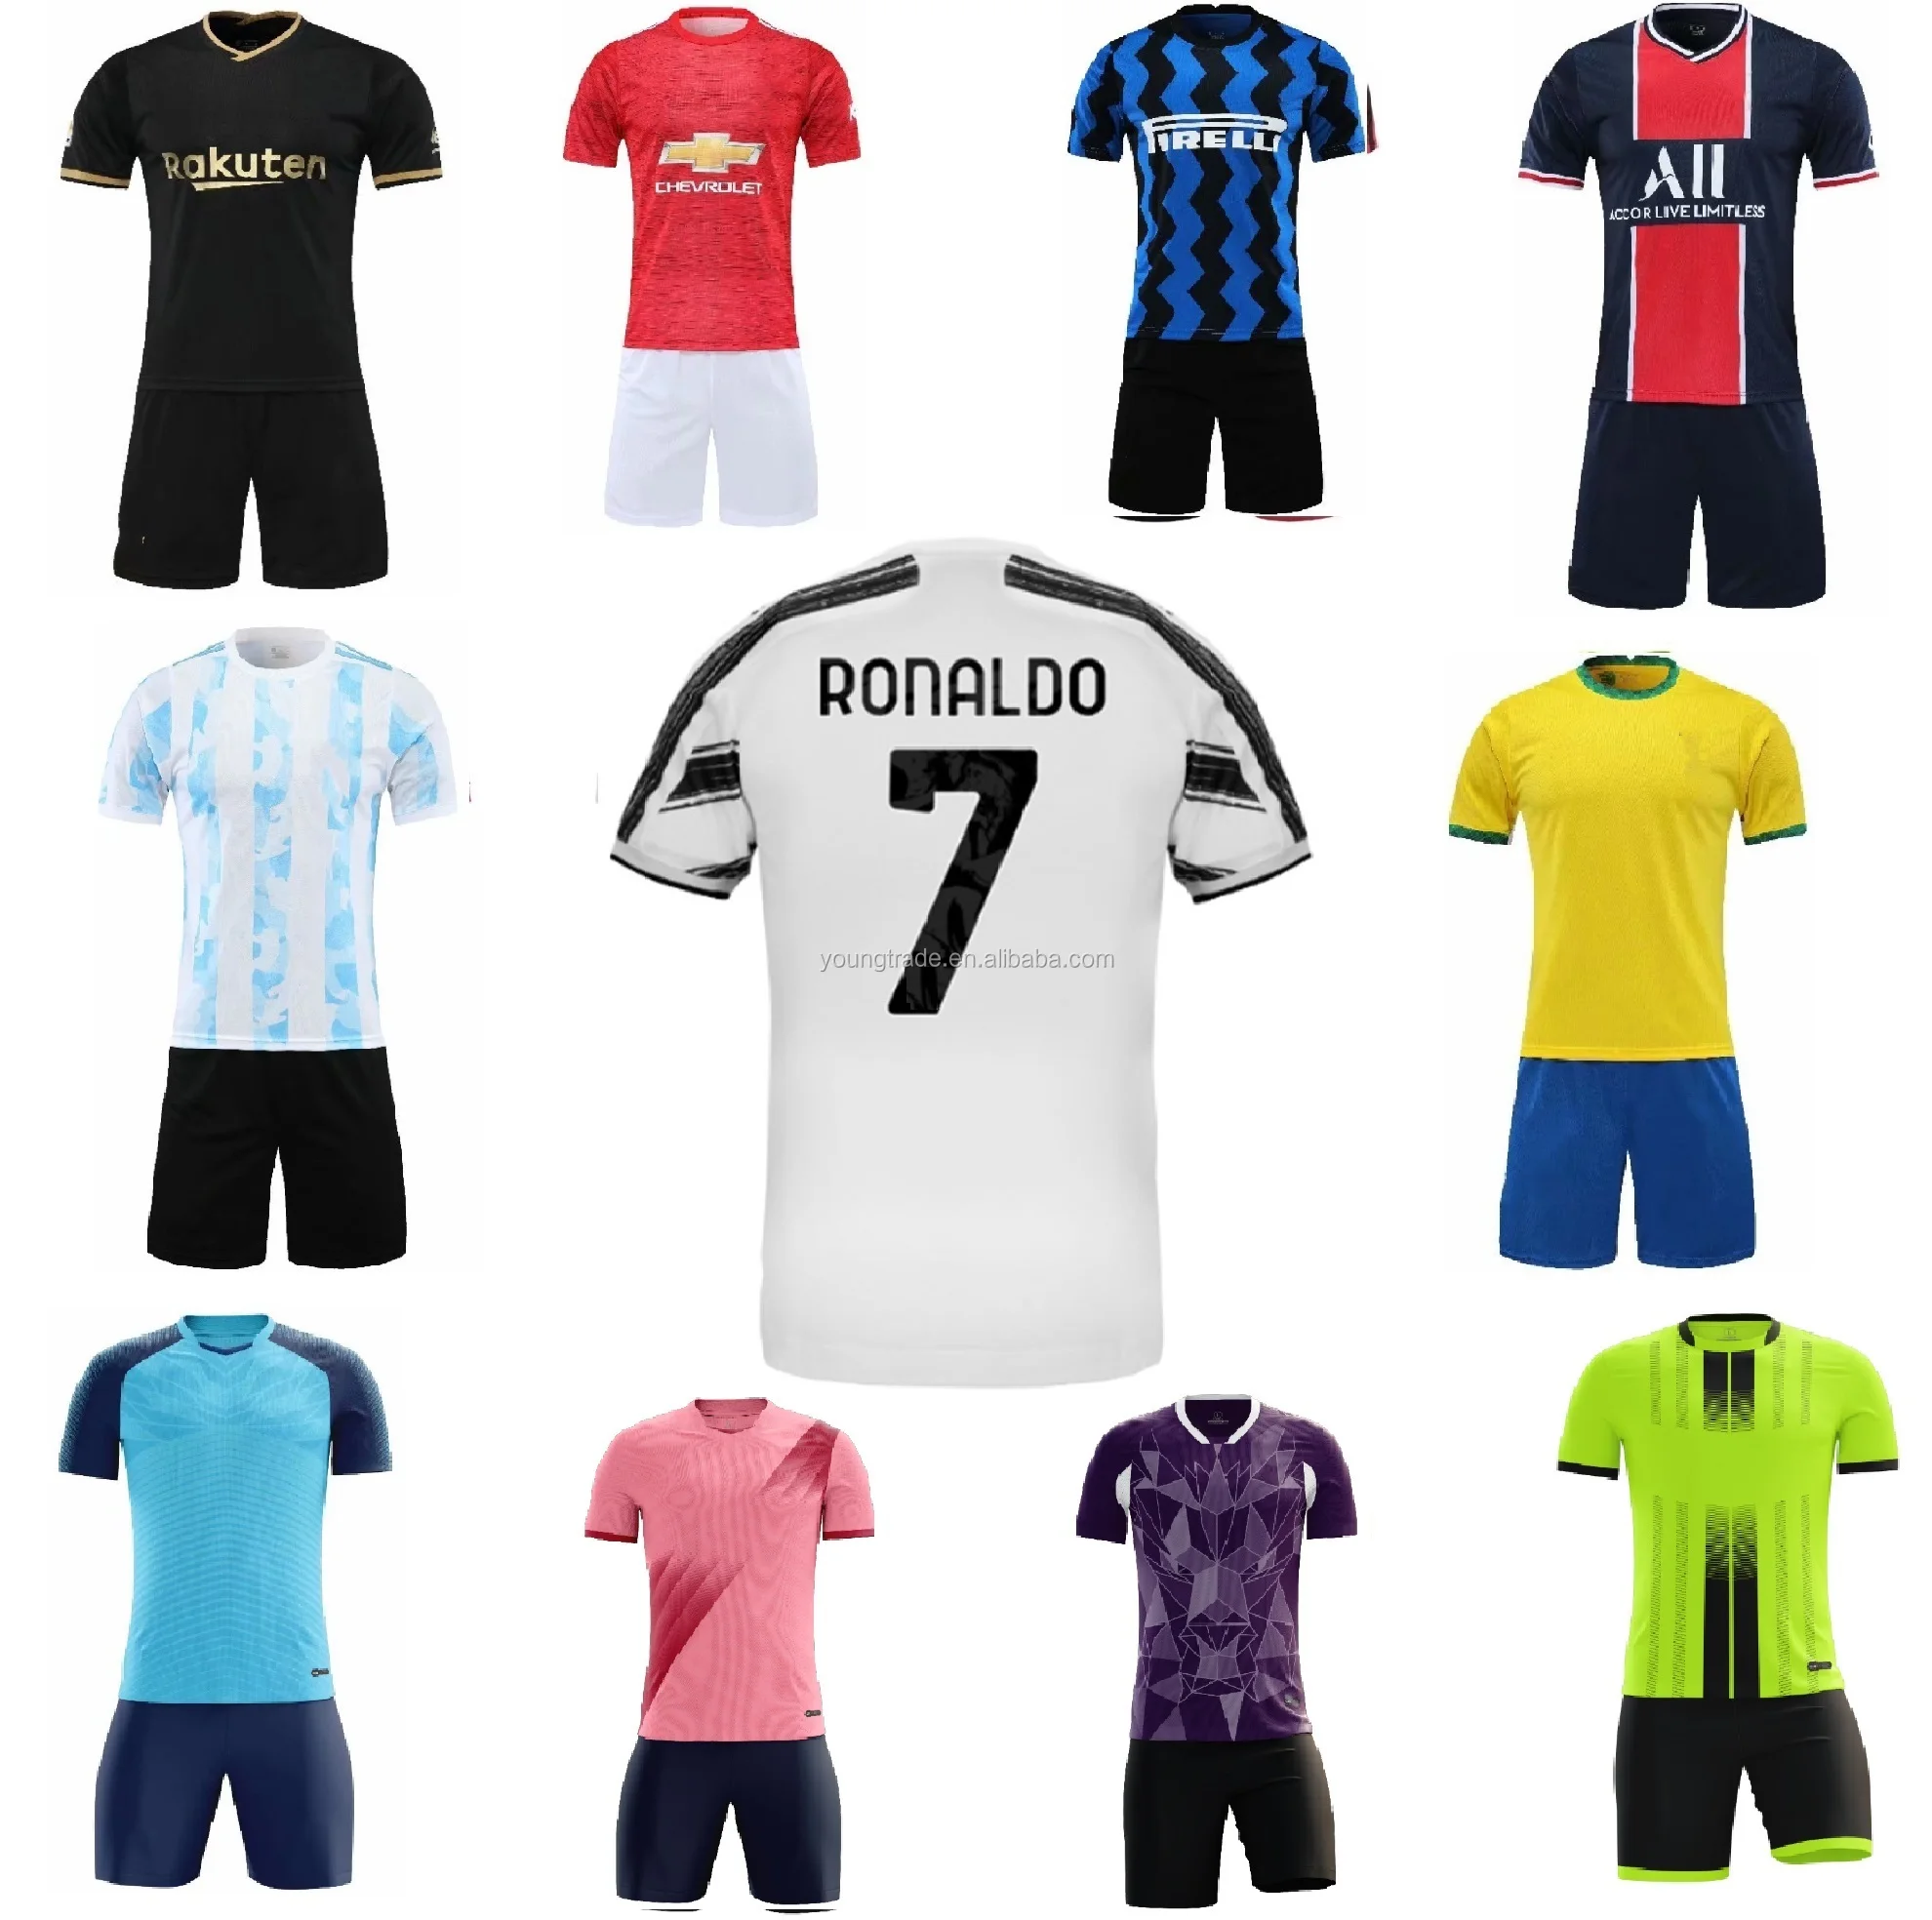 2021 soccer jerseys